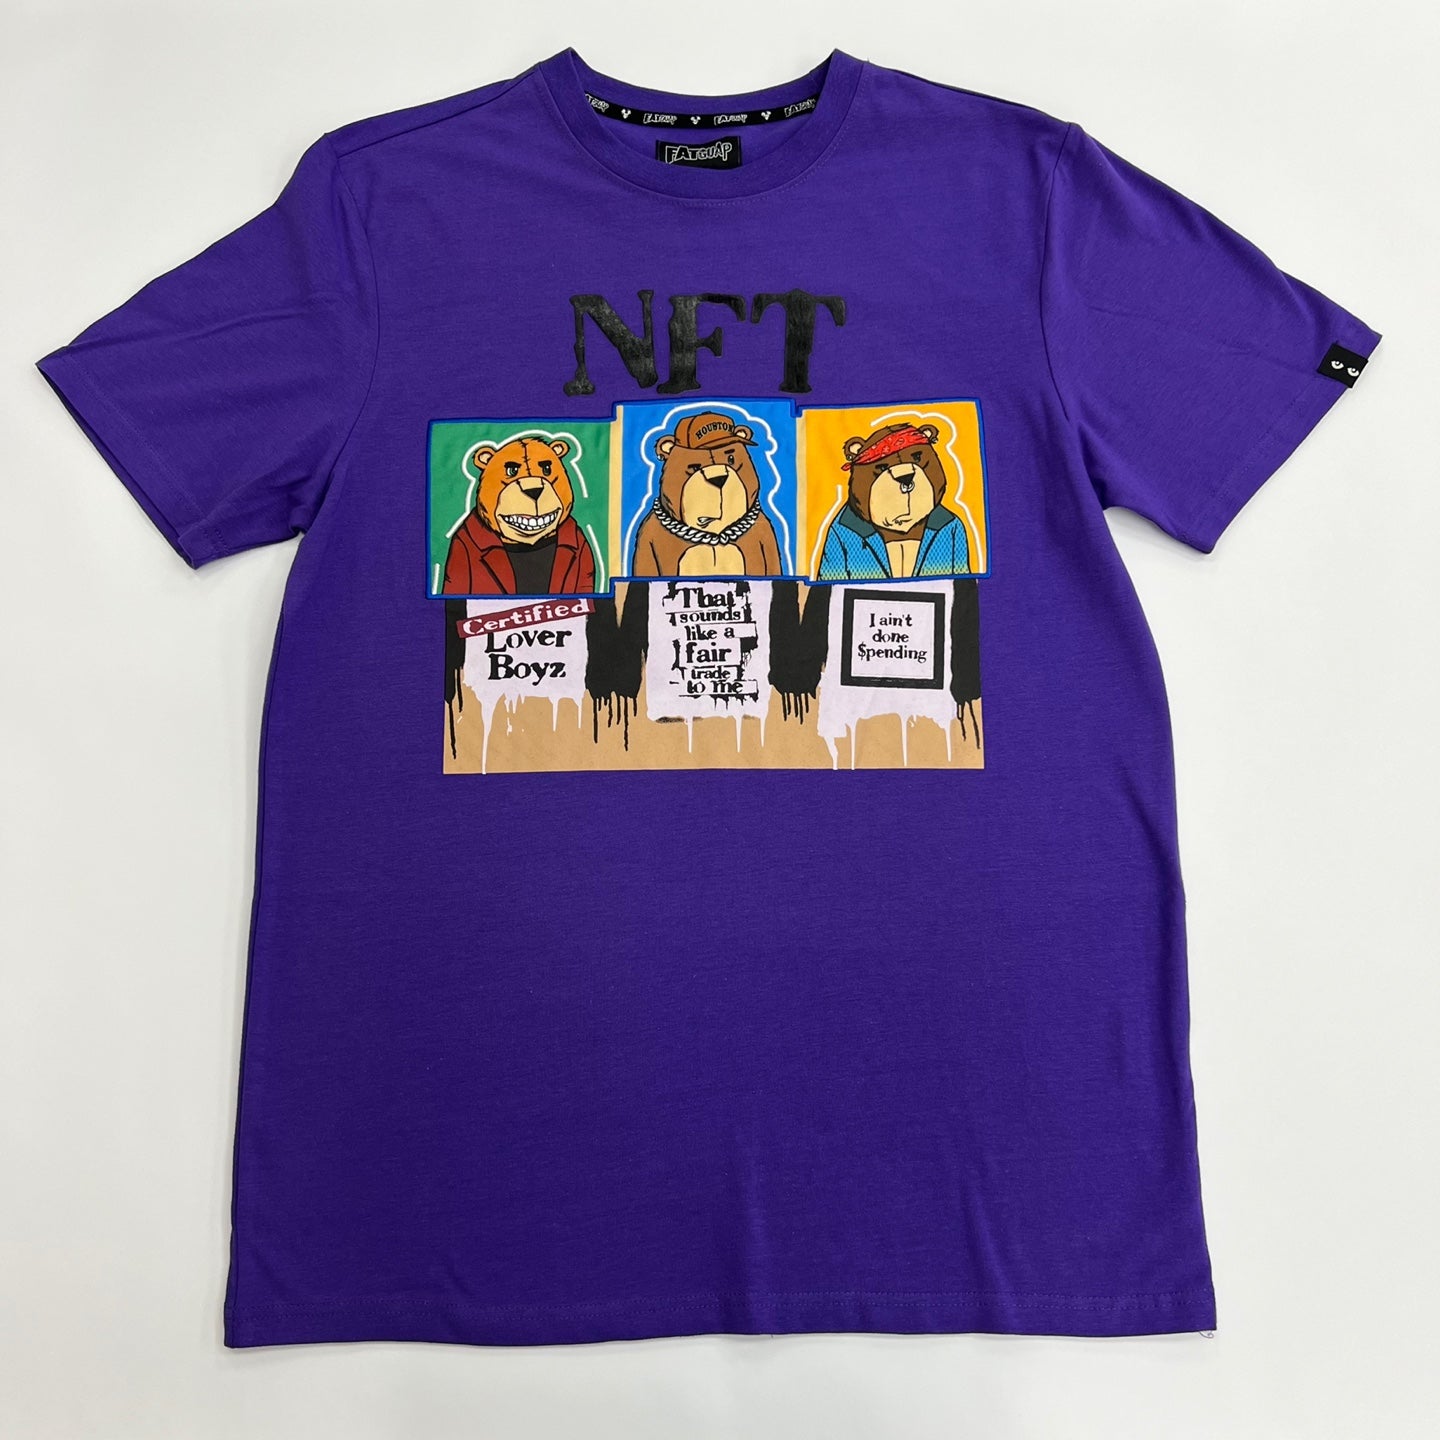 NFT Bear Graphic T-Shirt